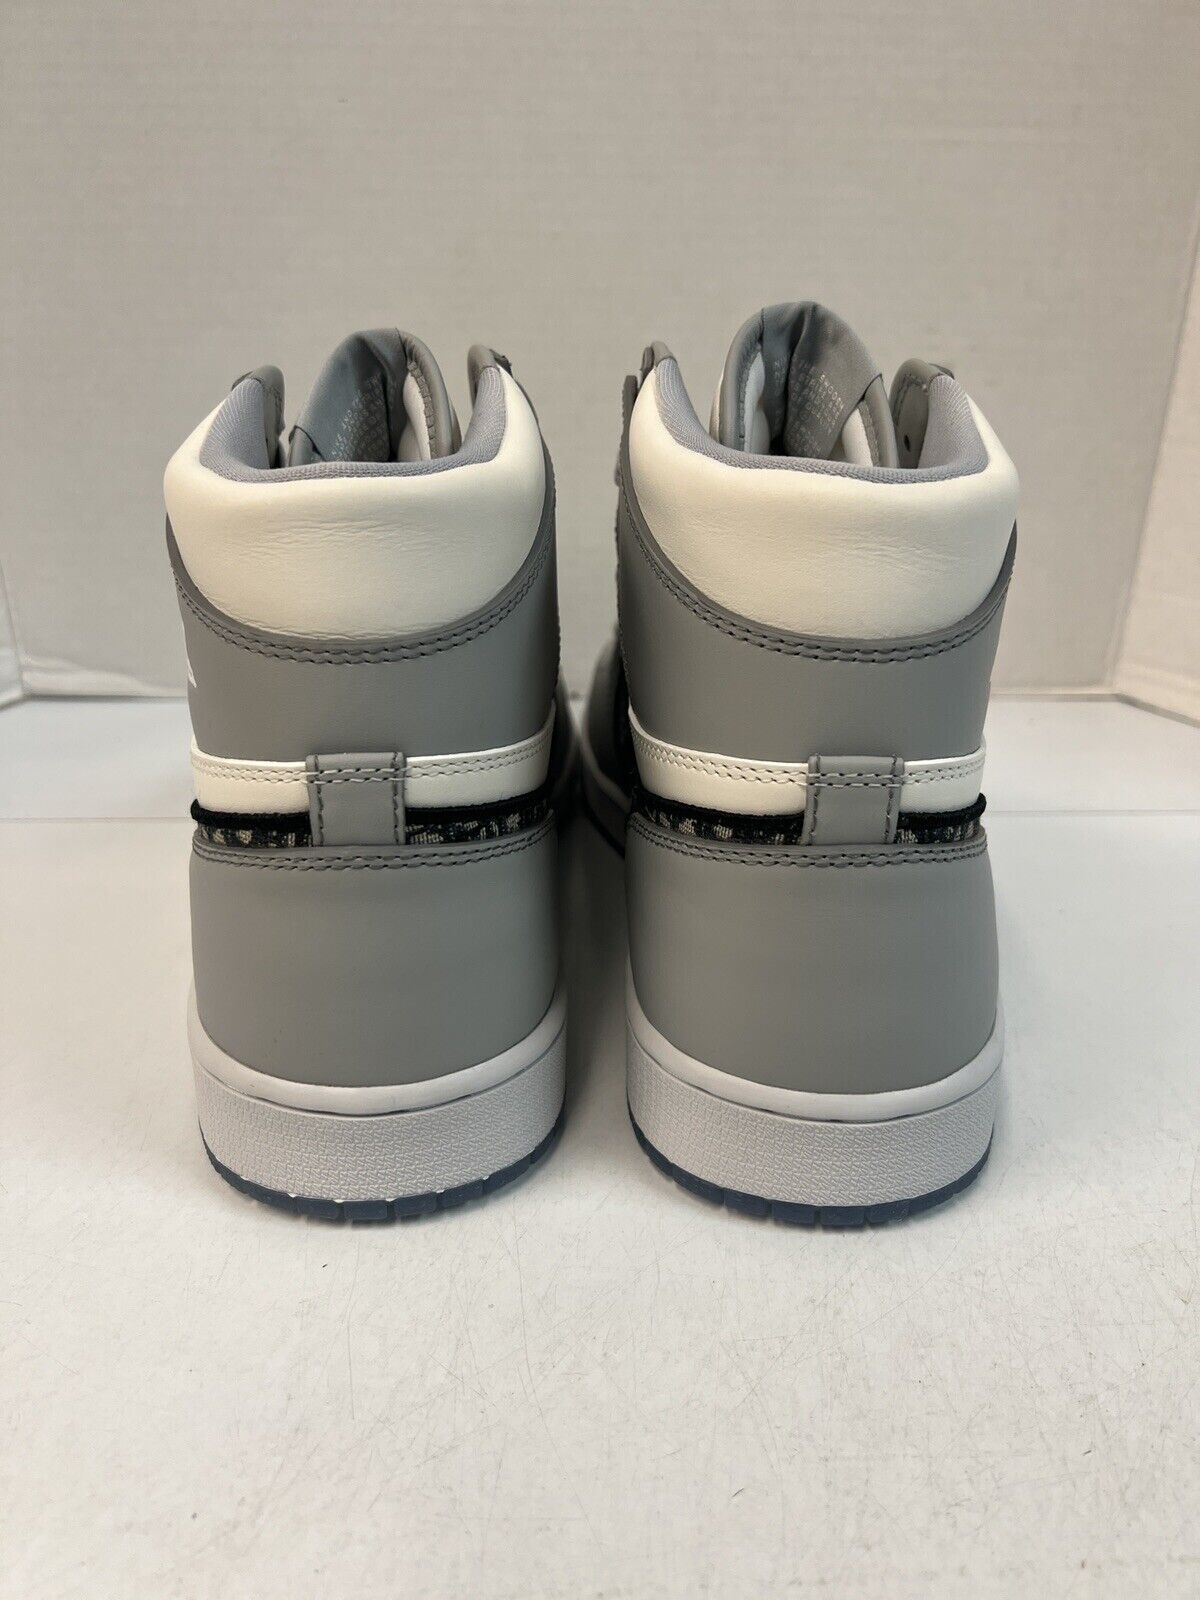 Giày Nike Air Jordan rep 11 cổ thấp mix trắng đen đẹp xinh  Góc Của Nhỏ